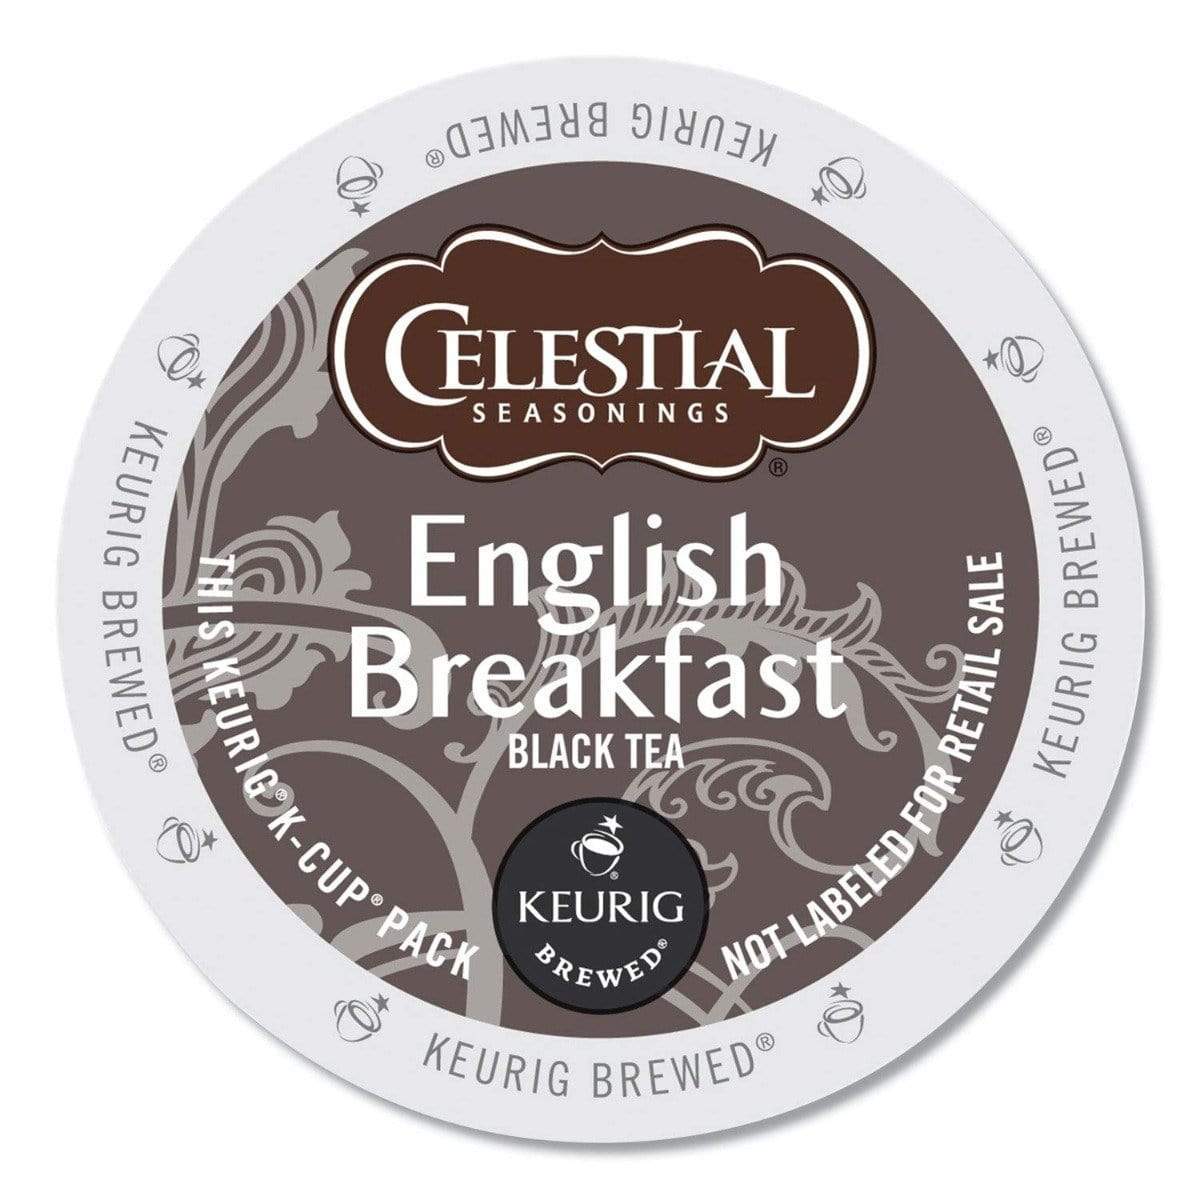 Celestial Seasonings Coffee Celestial Seasoning English Breakfast K-Cup Tea - 24 Count Box